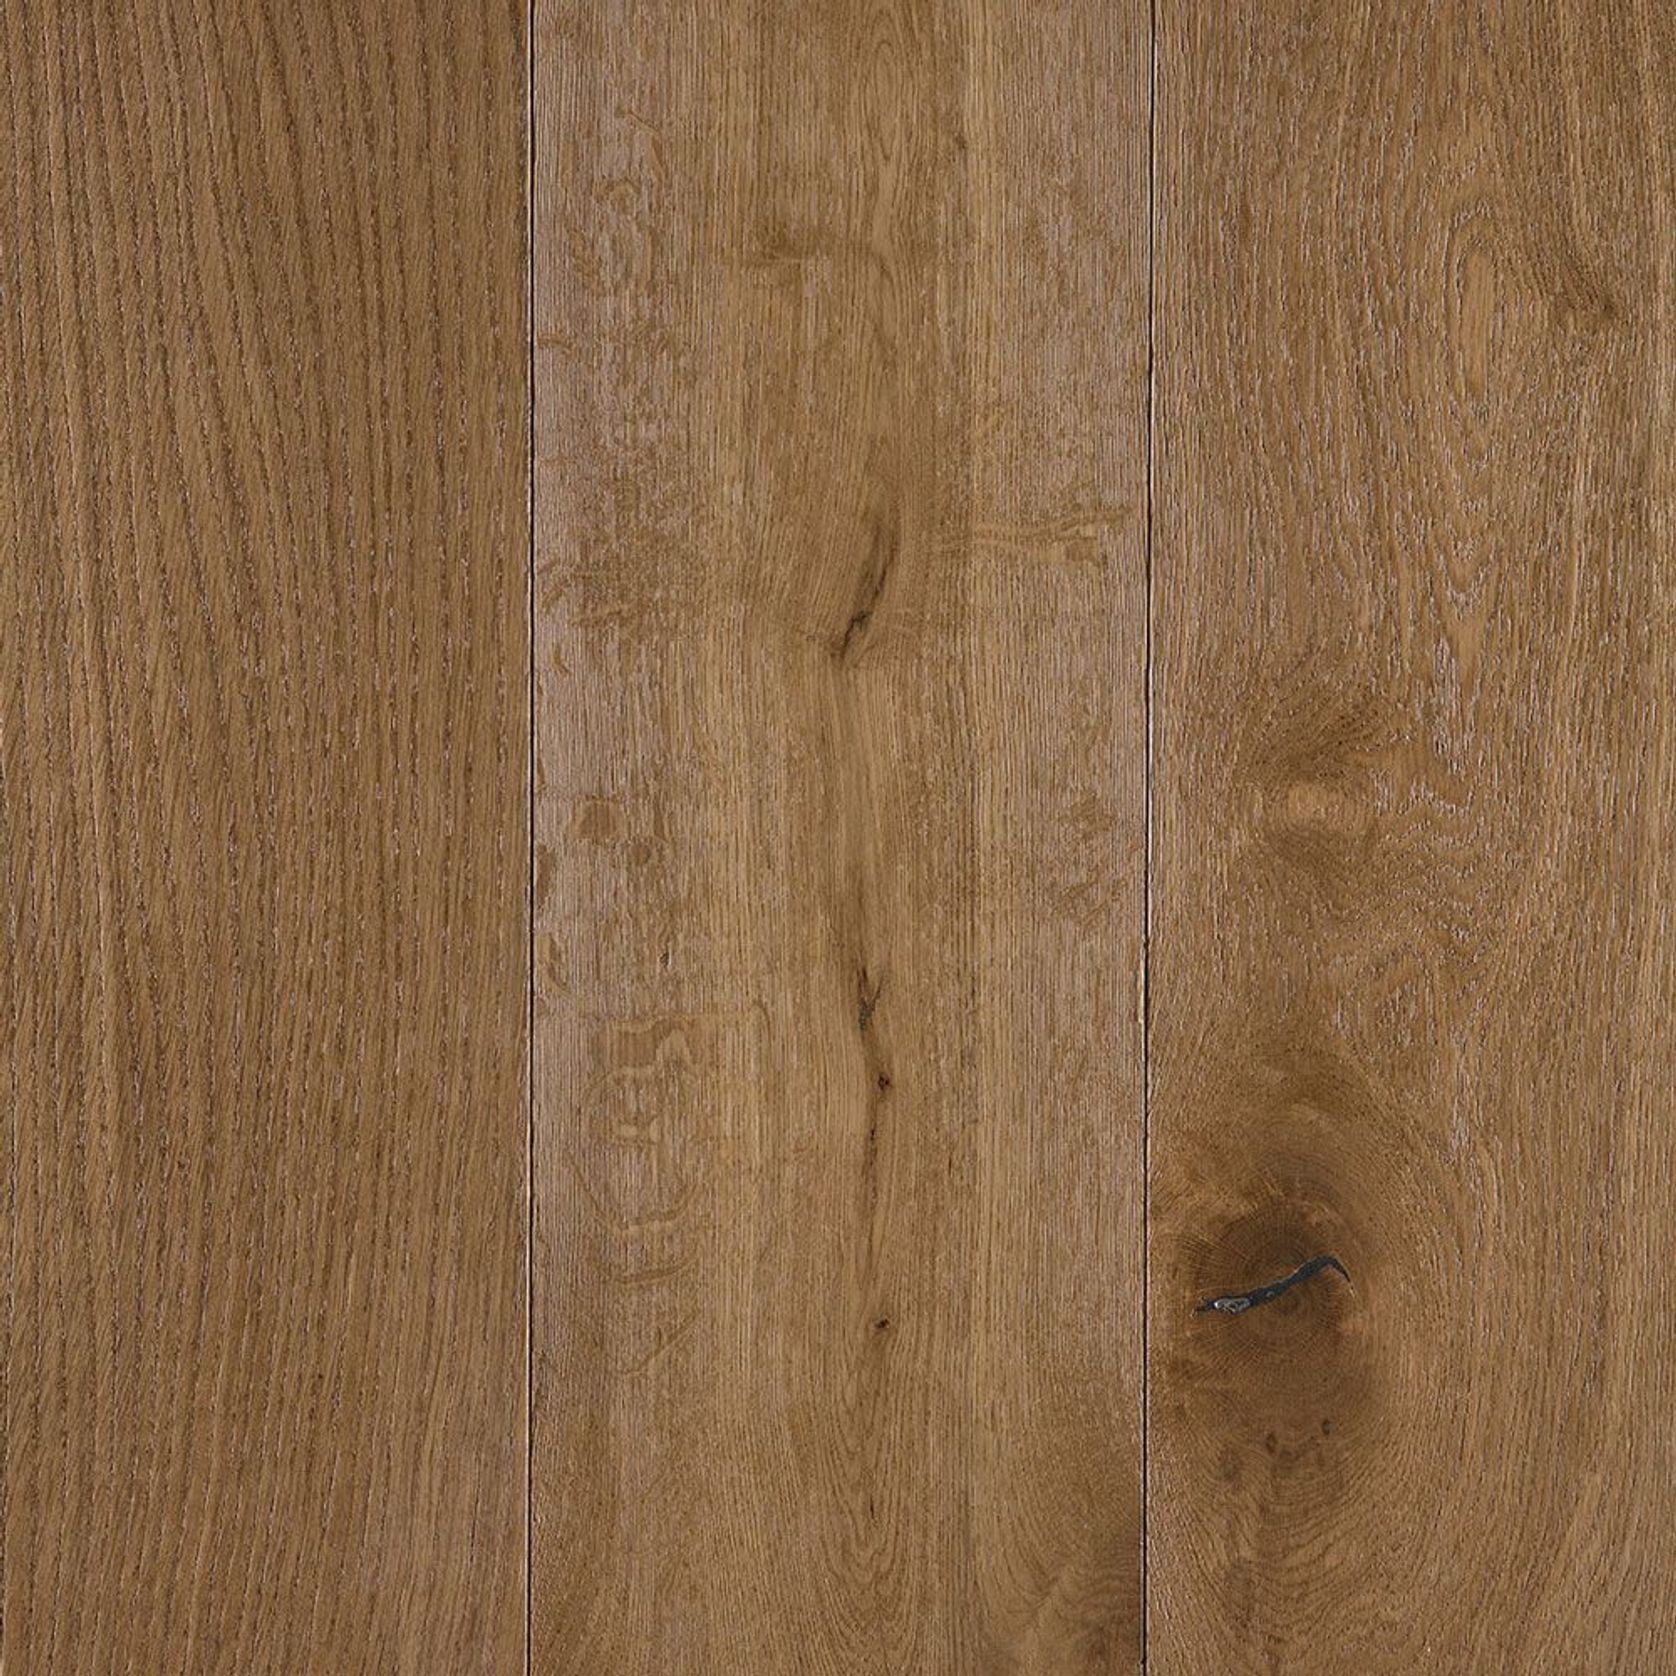 JIRO "Trio Smoked" European Oak Engineered Floorboards gallery detail image